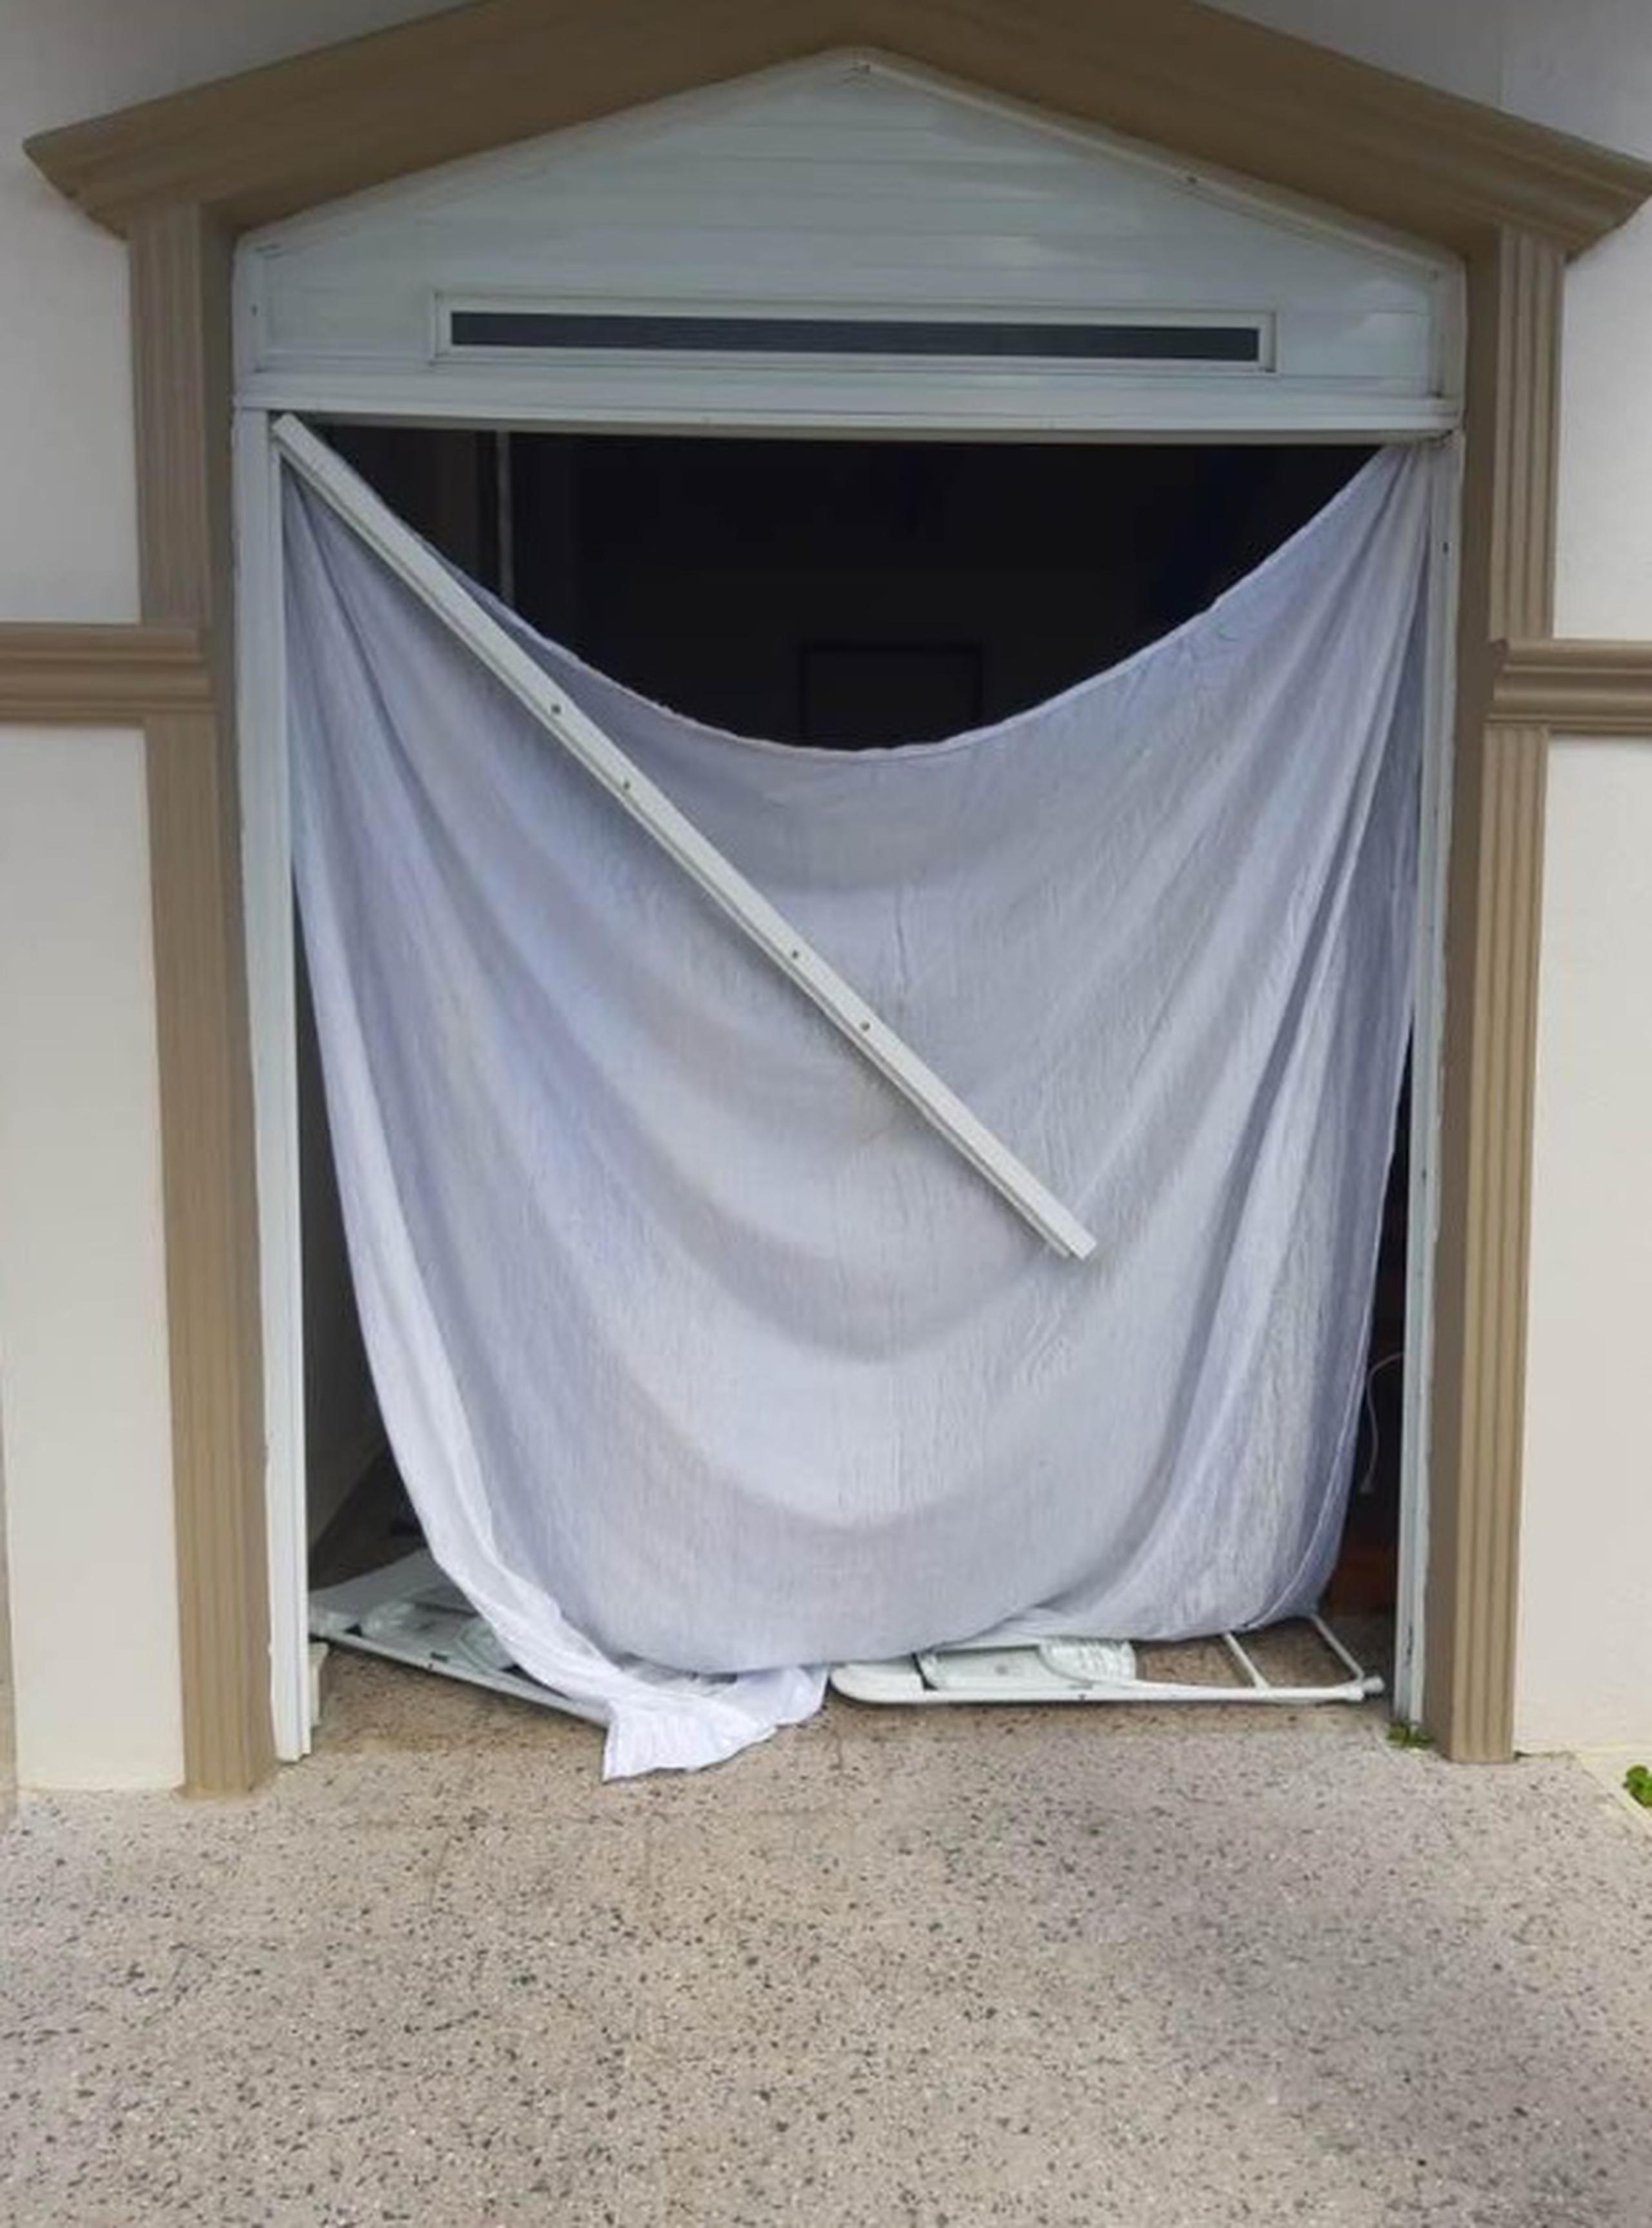 Los delincuentes dejaron una cortina en la entrada y se llevaron -entre otras cosas- la puerta, valorada en $2,000.